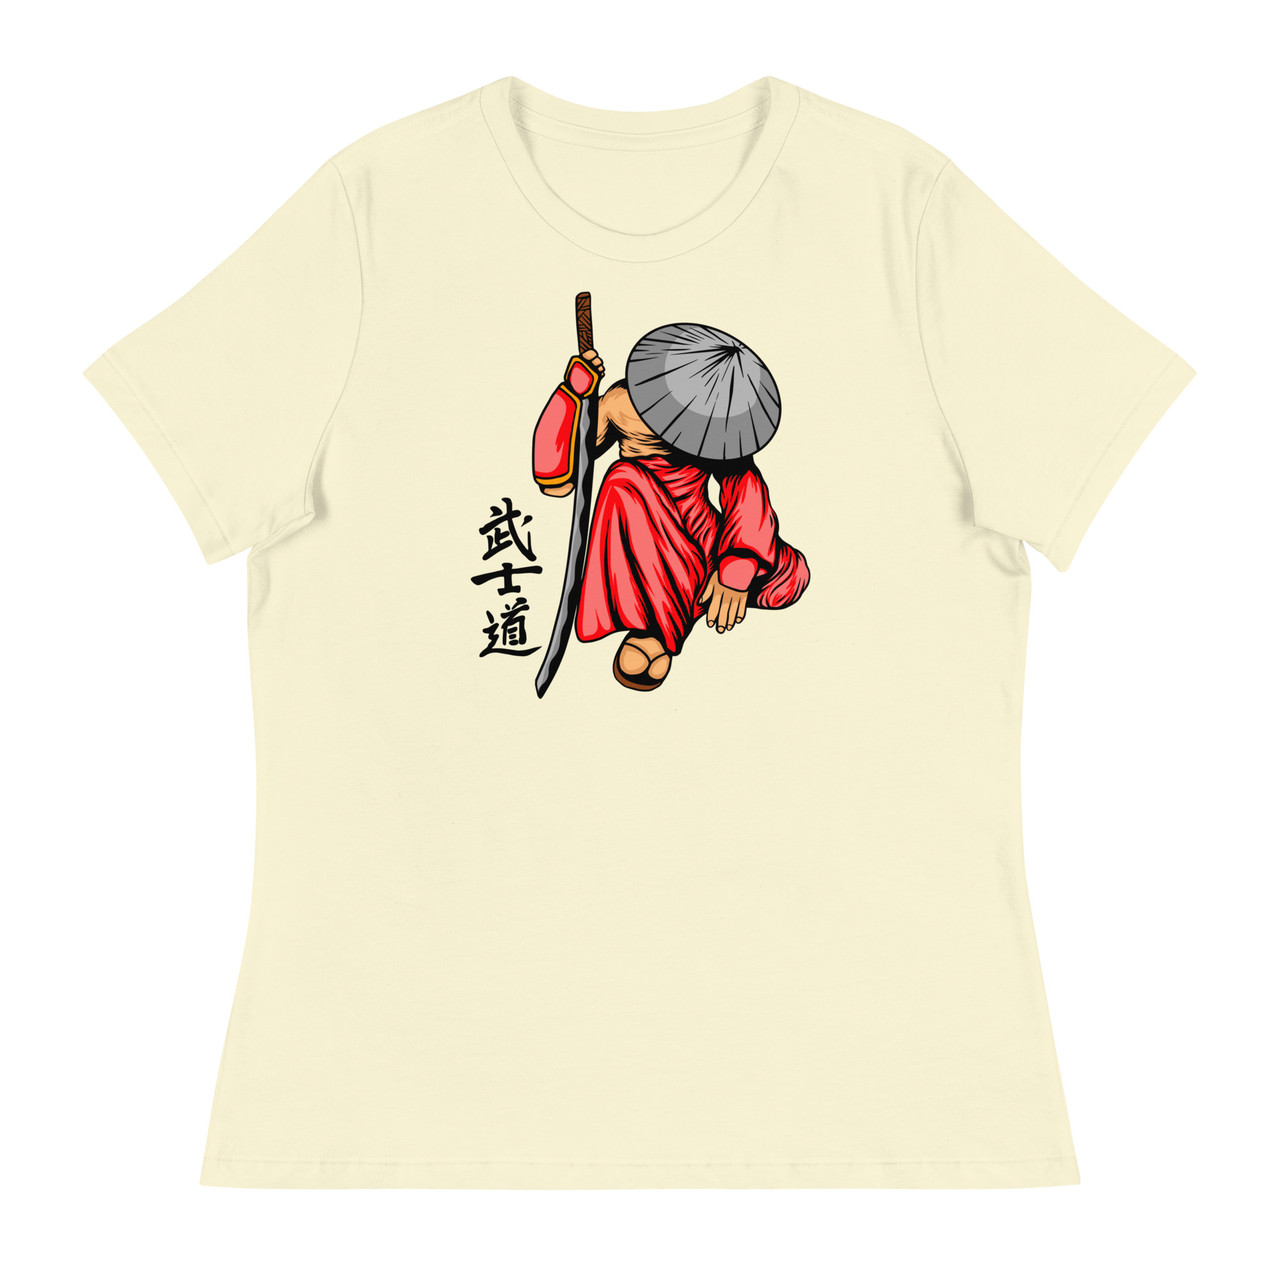 Samurai 18 Women's Relaxed T-Shirt - Bella + Canvas 6400 